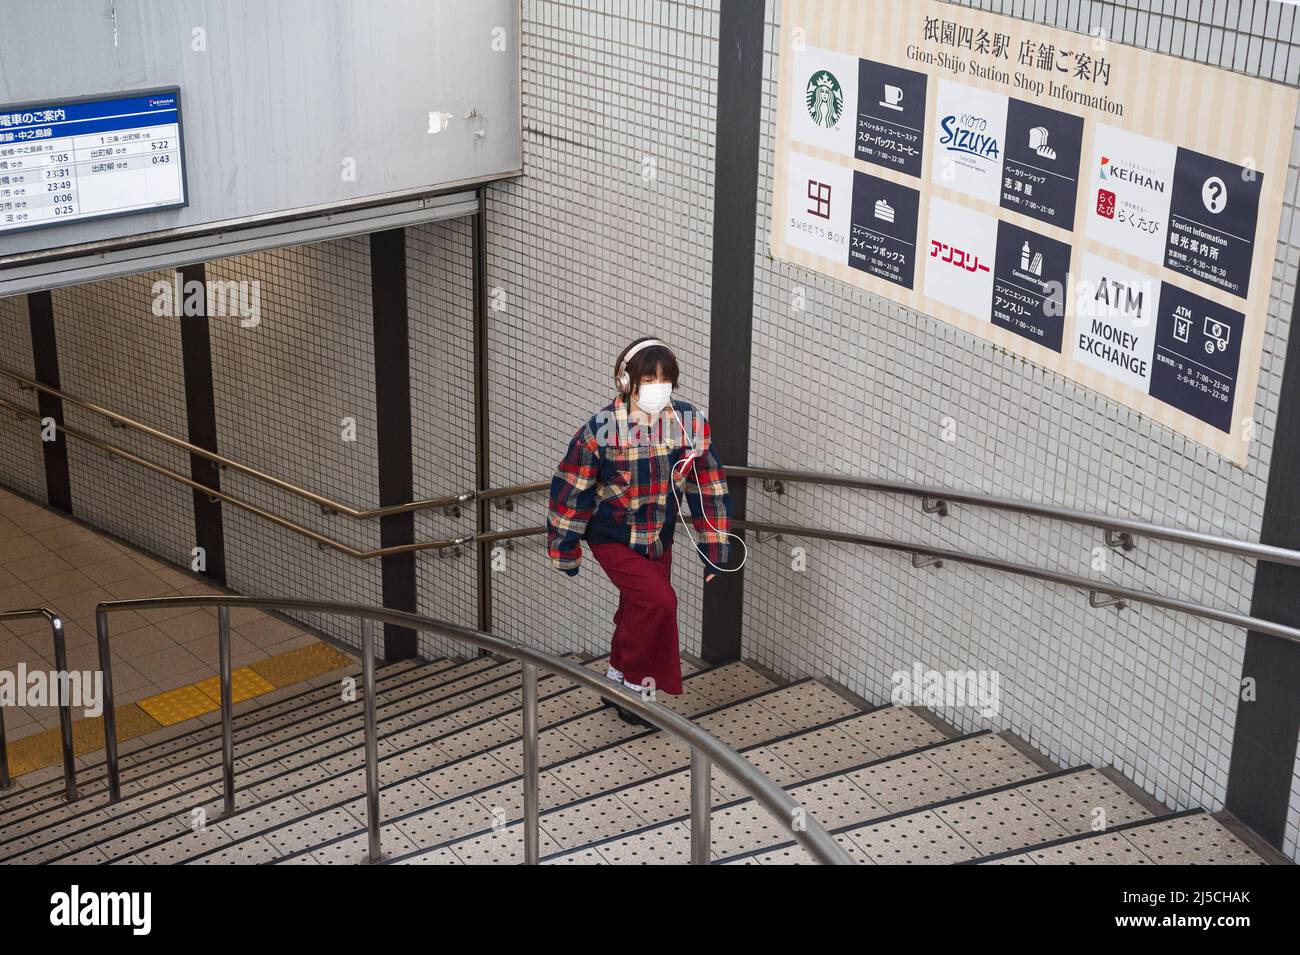 23 dicembre 2017, Kyoto, Giappone, Asia - Una giovane donna che indossa una protezione per la bocca e cuffie cammina su una rampa di scale in una stazione della metropolitana del centro. [traduzione automatizzata] Foto Stock